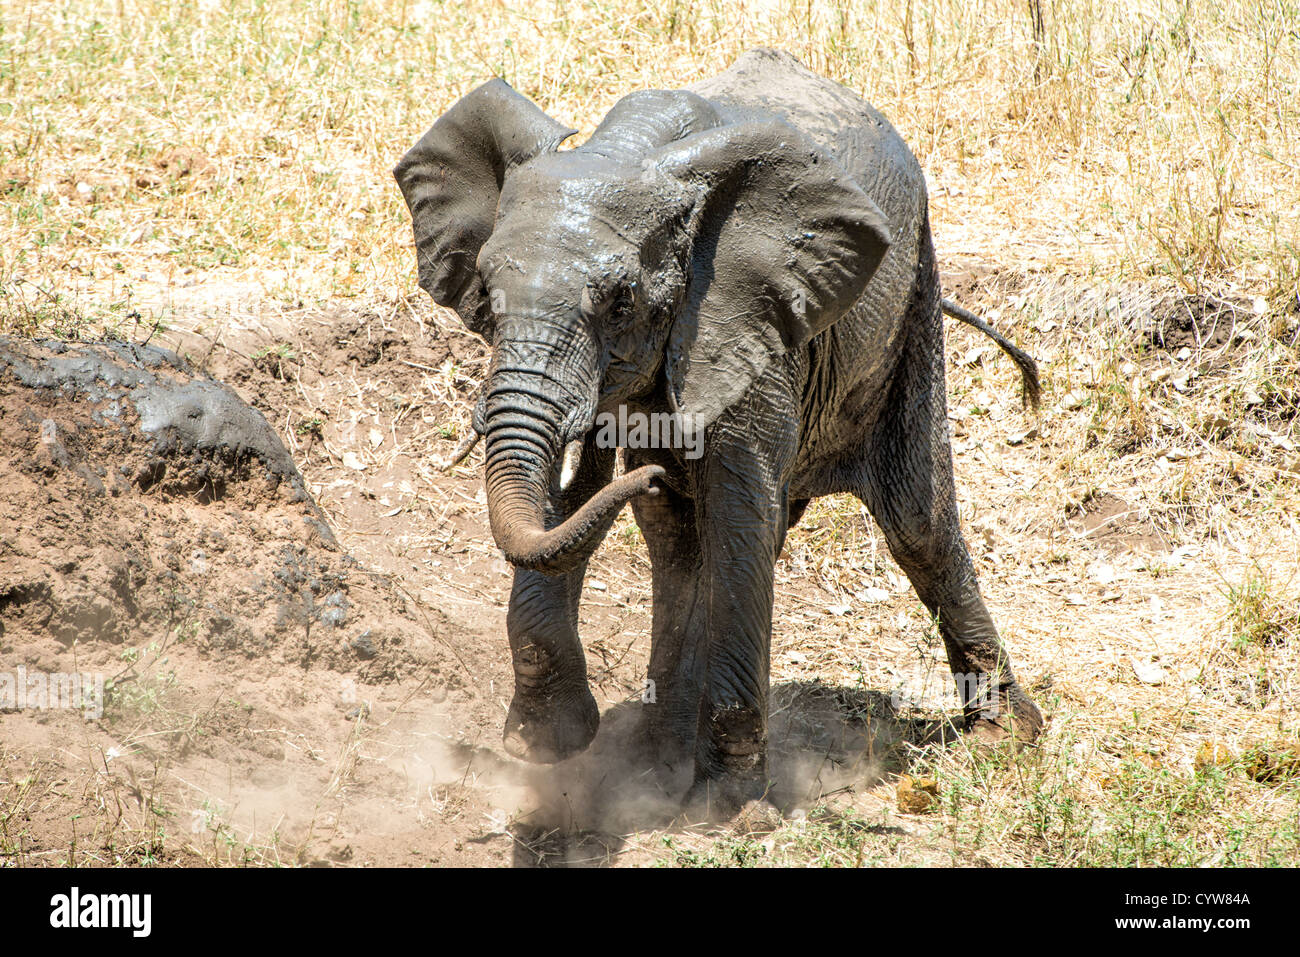 TARANGIRE-NATIONALPARK, Tansania - ein Elefant bedeckt sich mit Schlamm im Tarangire-Nationalpark im Norden Tansanias, nicht weit vom Ngorongoro-Krater und der Serengeti. Der Ngorongoro-Krater, der zum UNESCO-Weltkulturerbe gehört, ist ein riesiger vulkanischer Krater im Norden Tansanias. Sie wurde vor 2-3 Millionen Jahren gegründet, hat einen Durchmesser von etwa 20 Kilometern und ist die Heimat vielfältiger Tiere, einschließlich der „Big Five“-Wildtiere. Das Ngorongoro Conservation Area, bewohnt von den Maasai, enthält auch bedeutende archäologische Stätten wie die Olduvai-Schlucht und Laetoli, die Einblicke in die frühen Menschen bieten Stockfoto